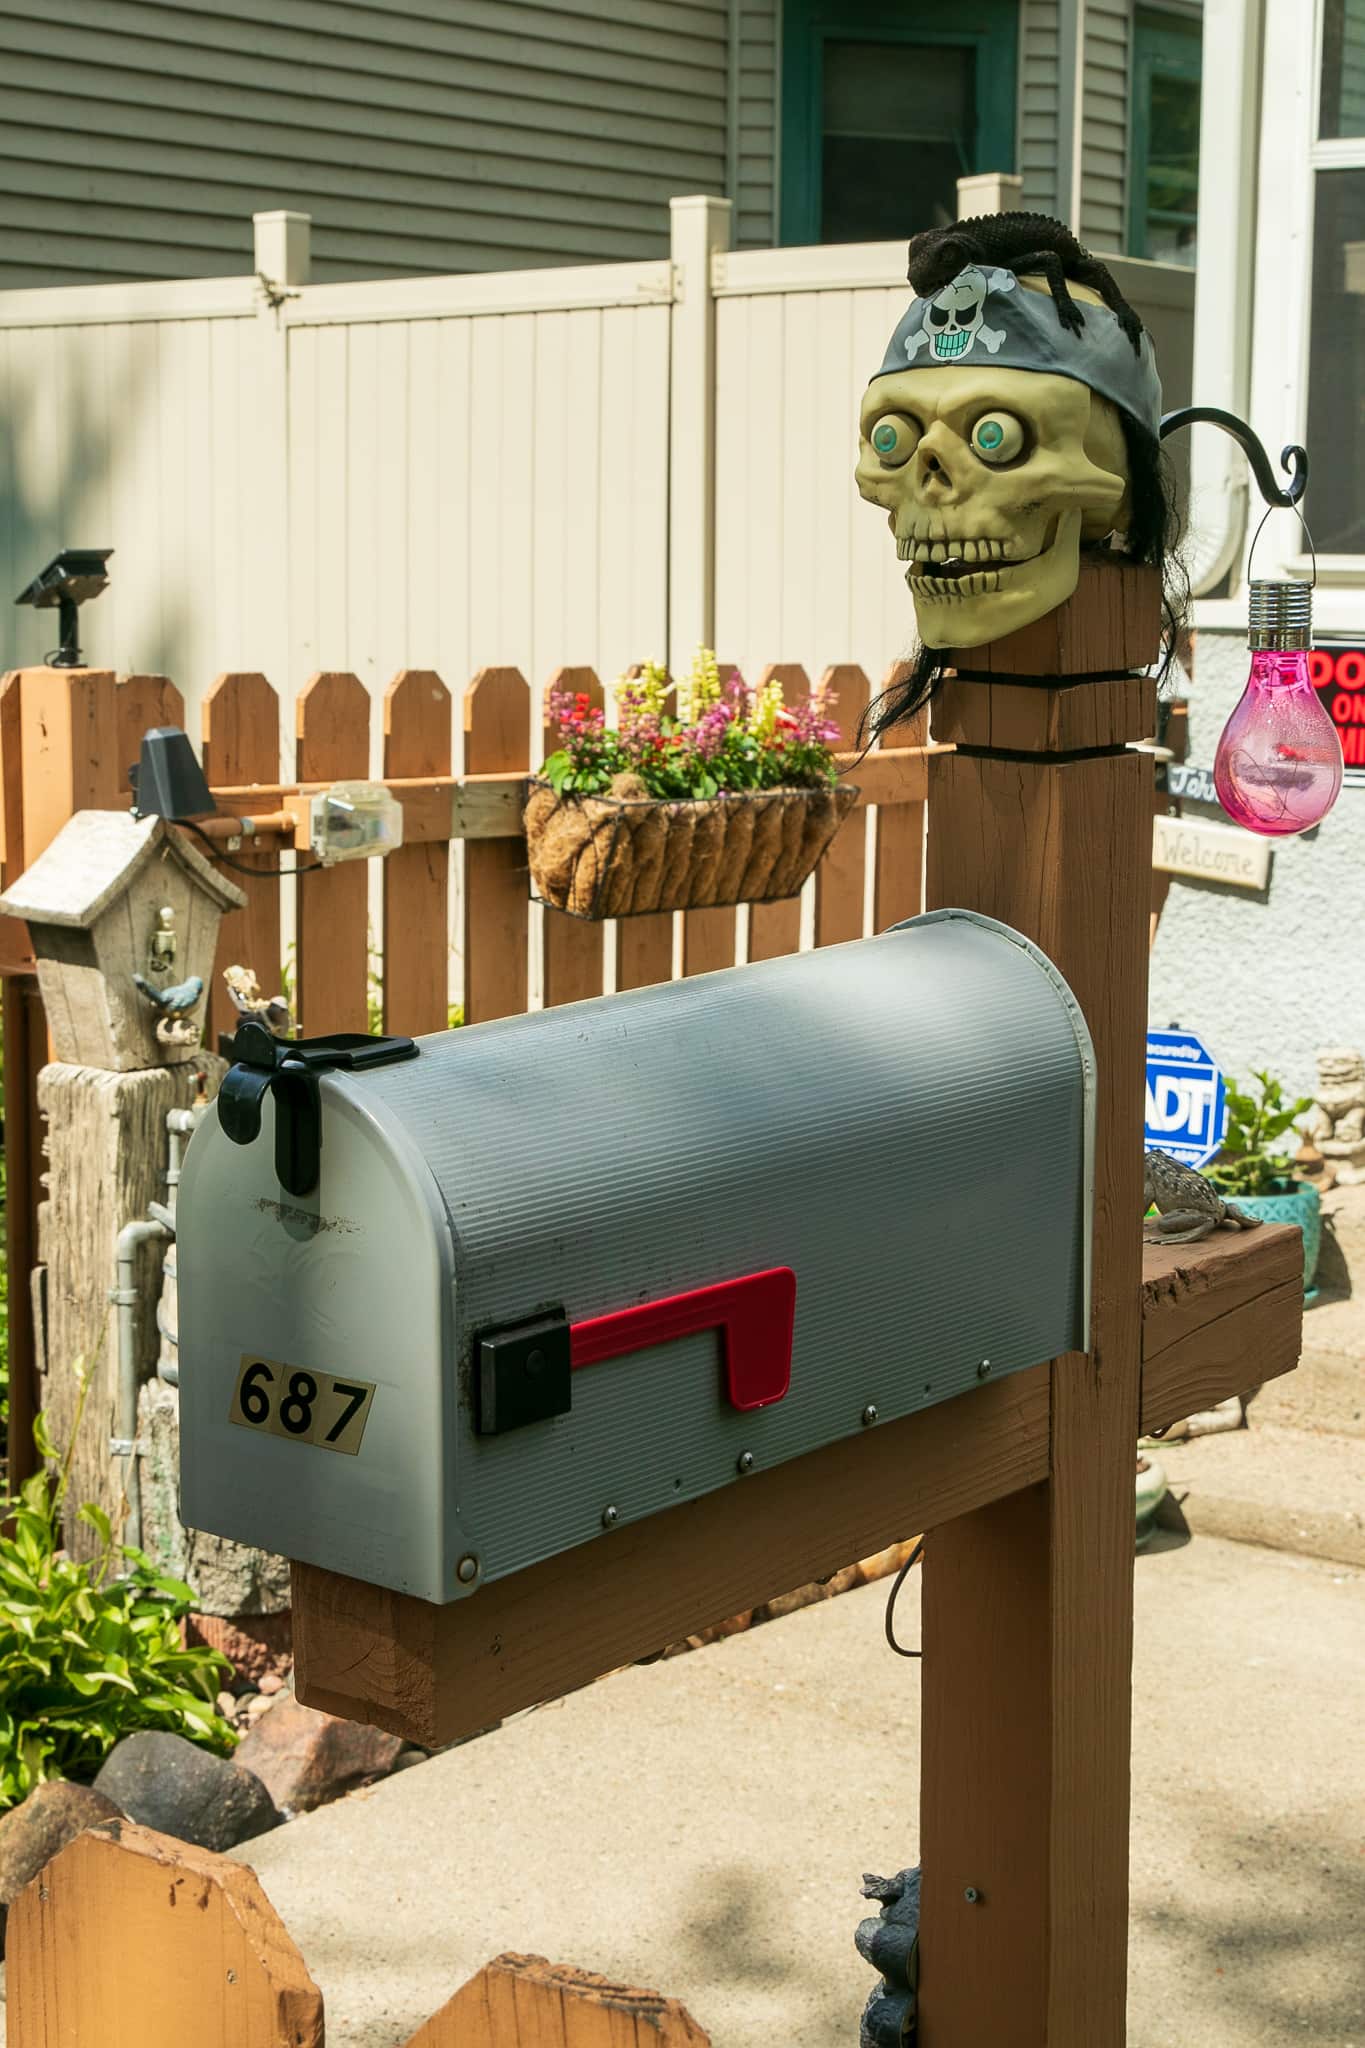 Arrrr you delivering the mail?